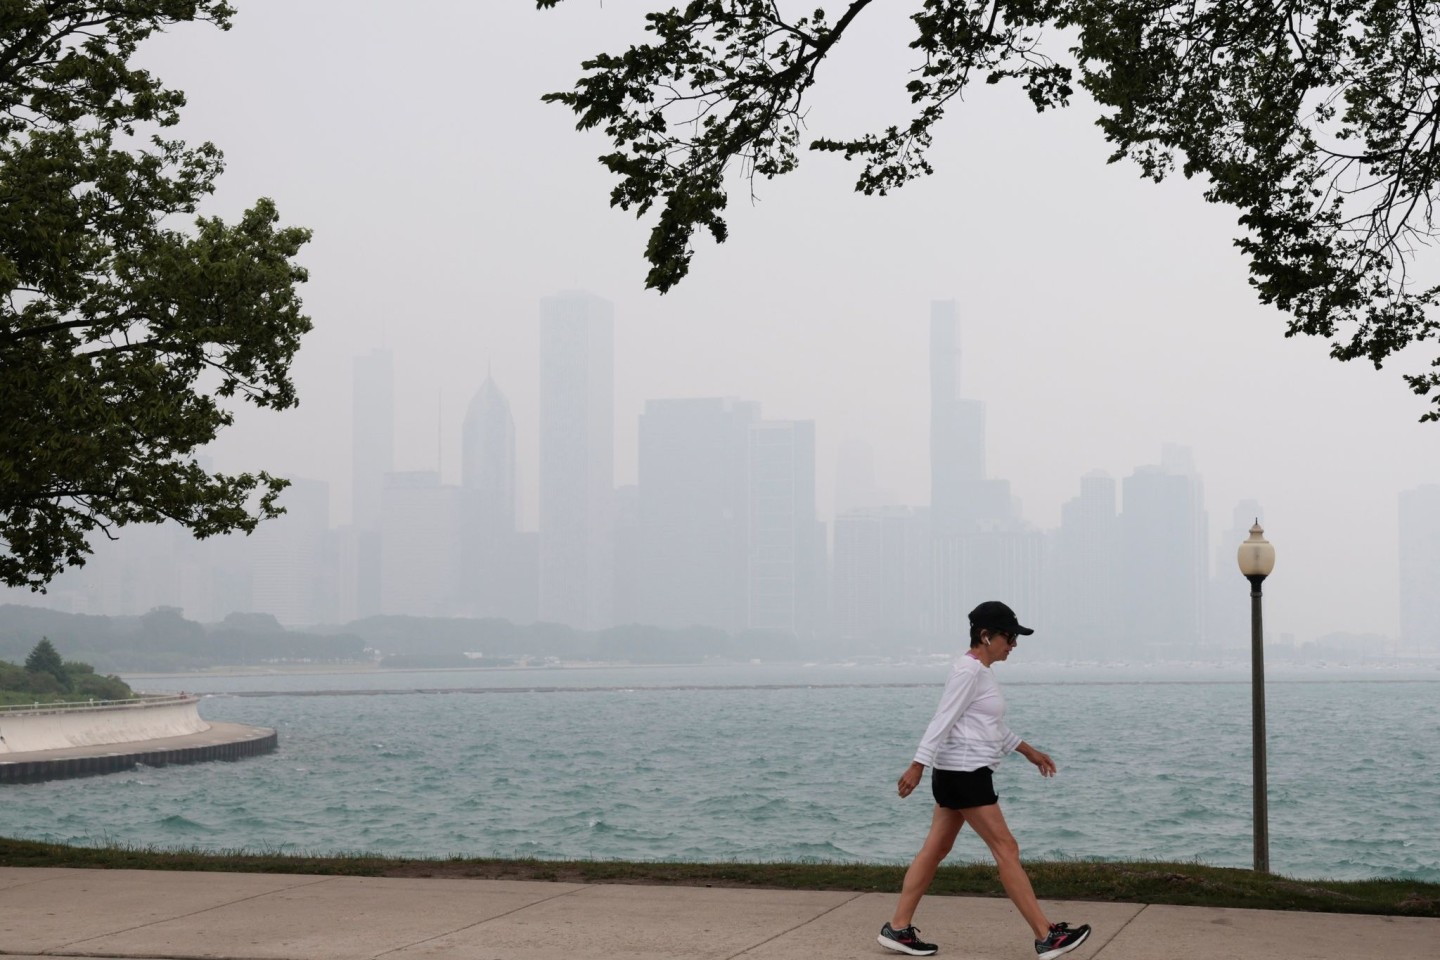 Die Skyline von Chicago ist in Dunst gehüllt. Waldbrände in Kanada zusammen mit höheren Ozonwerten sorgen weiterhin für schlechte Sichtverhältnisse und Luftqualitätswarnungen in der Re...